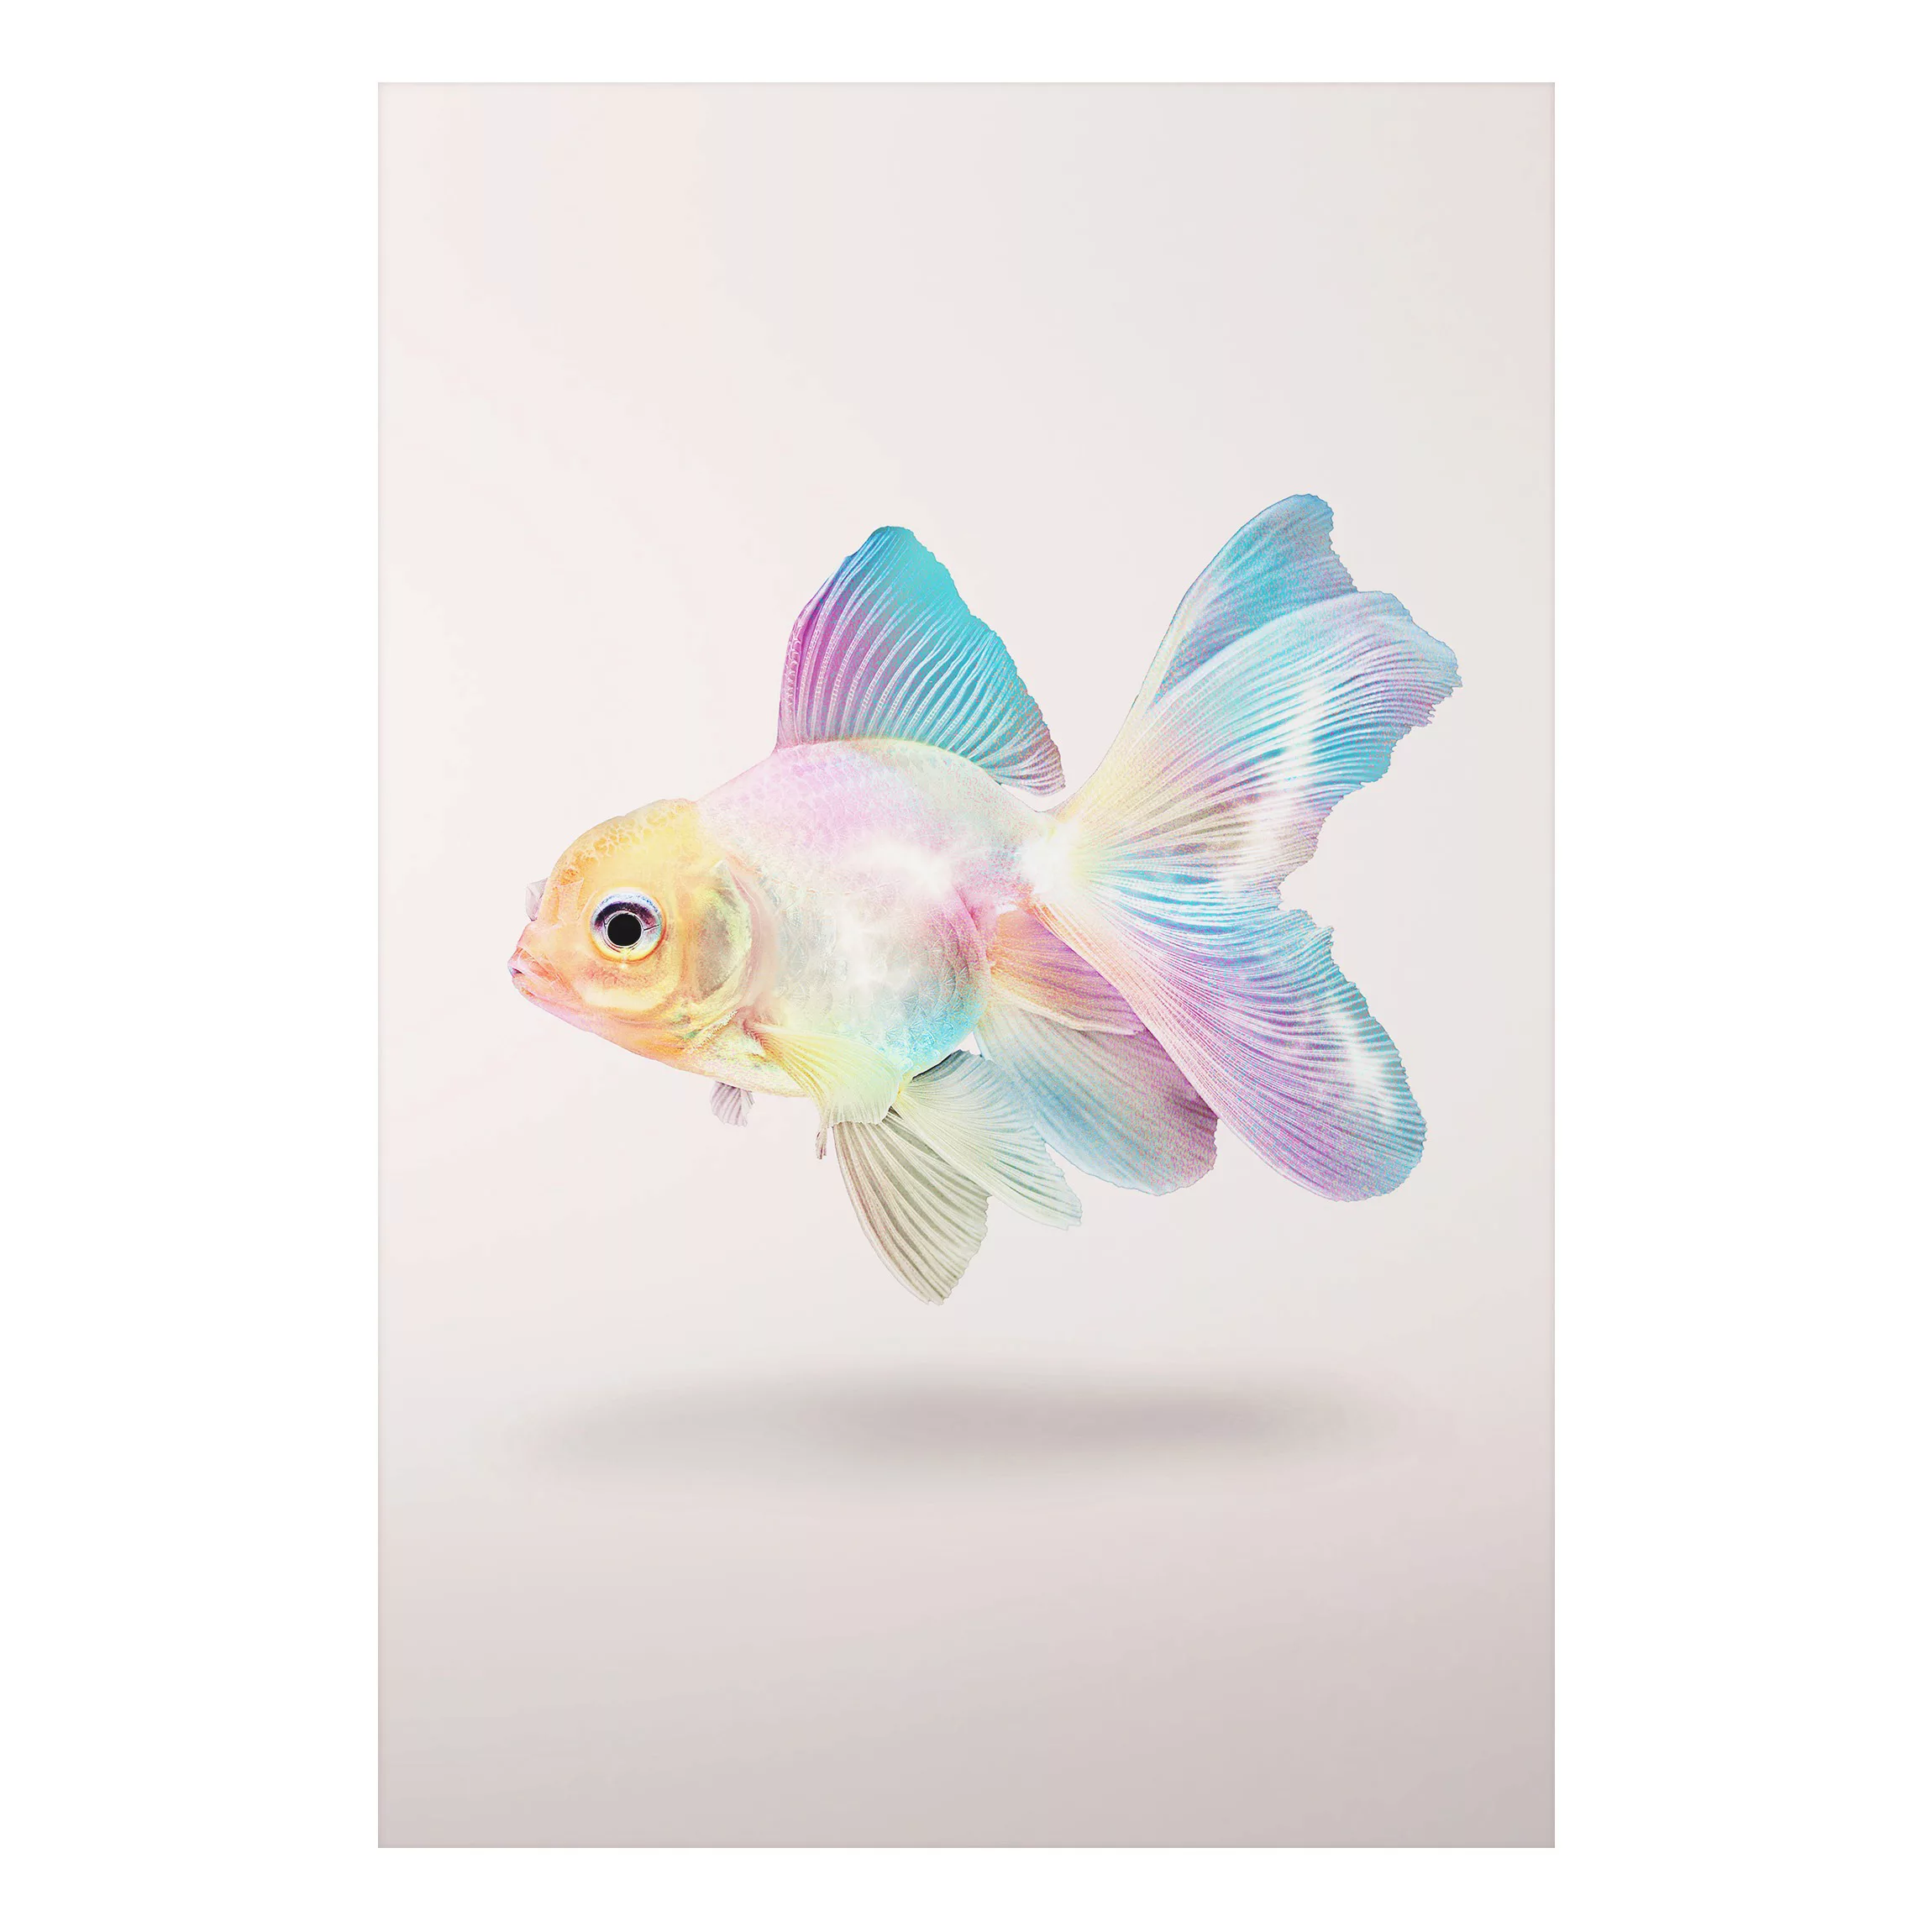 Alu-Dibond Bild Kunstdruck - Hochformat 2:3 Fisch in Pastell günstig online kaufen